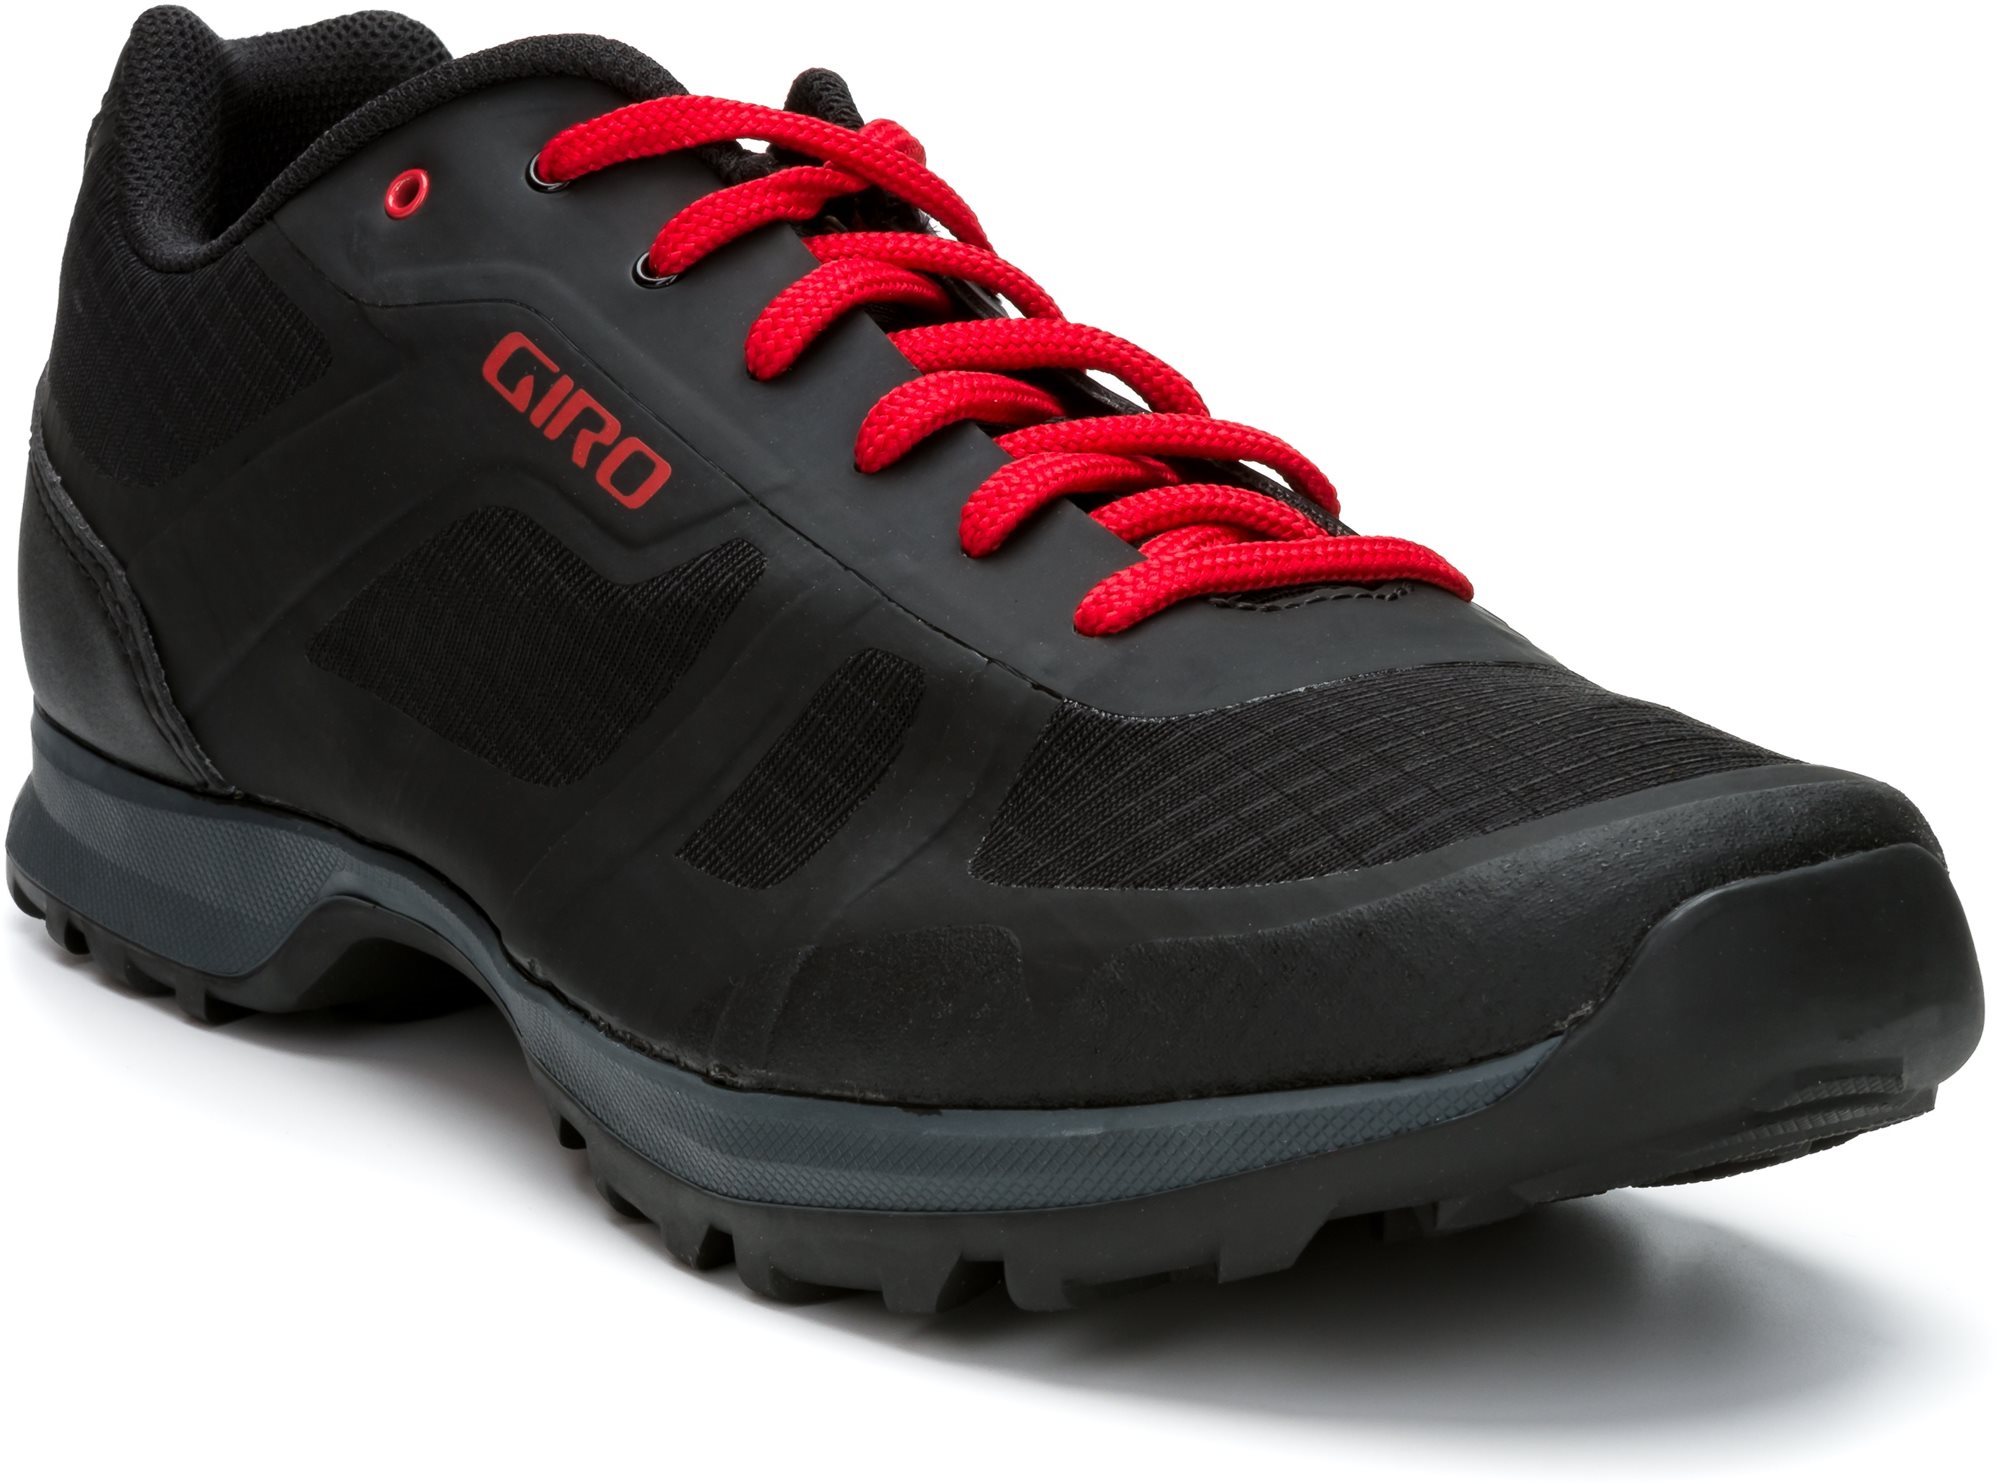 GIRO Gauge kerékpáros cipő, fekete/világos piros, 41-es